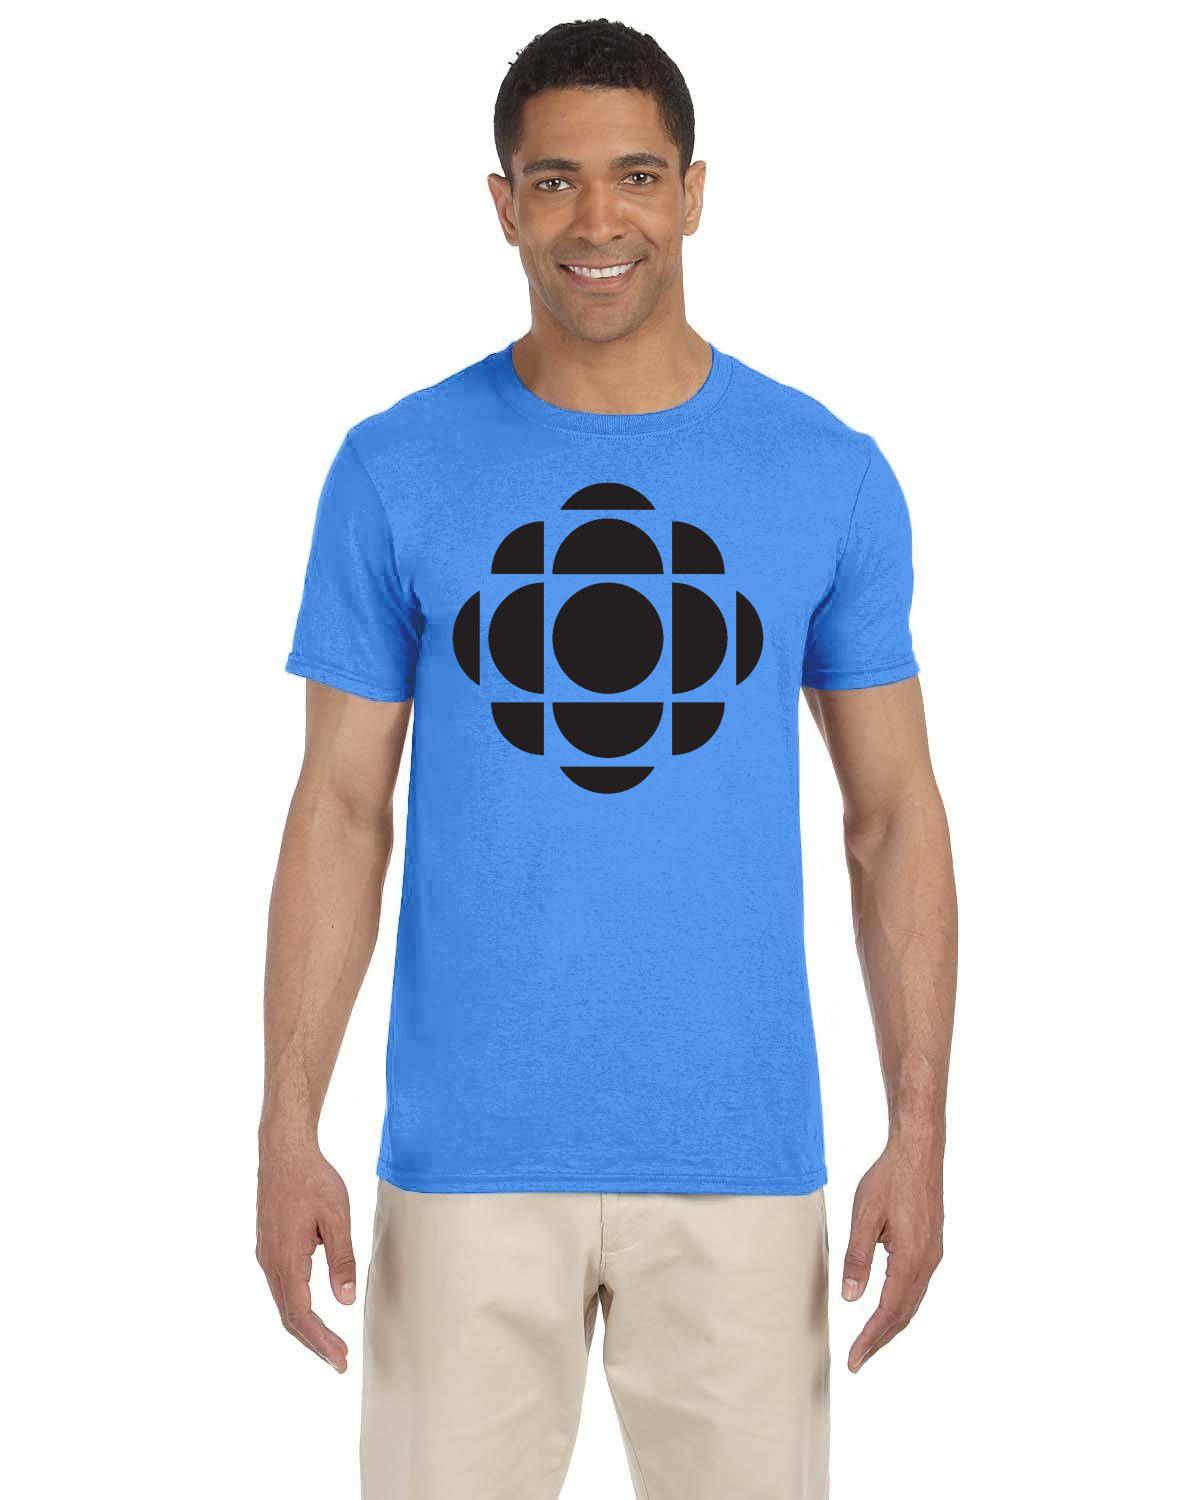 CBC Gem Black Logo T-Shirt, Canadian Nostalgia, Officially Licensed CBC Apparel